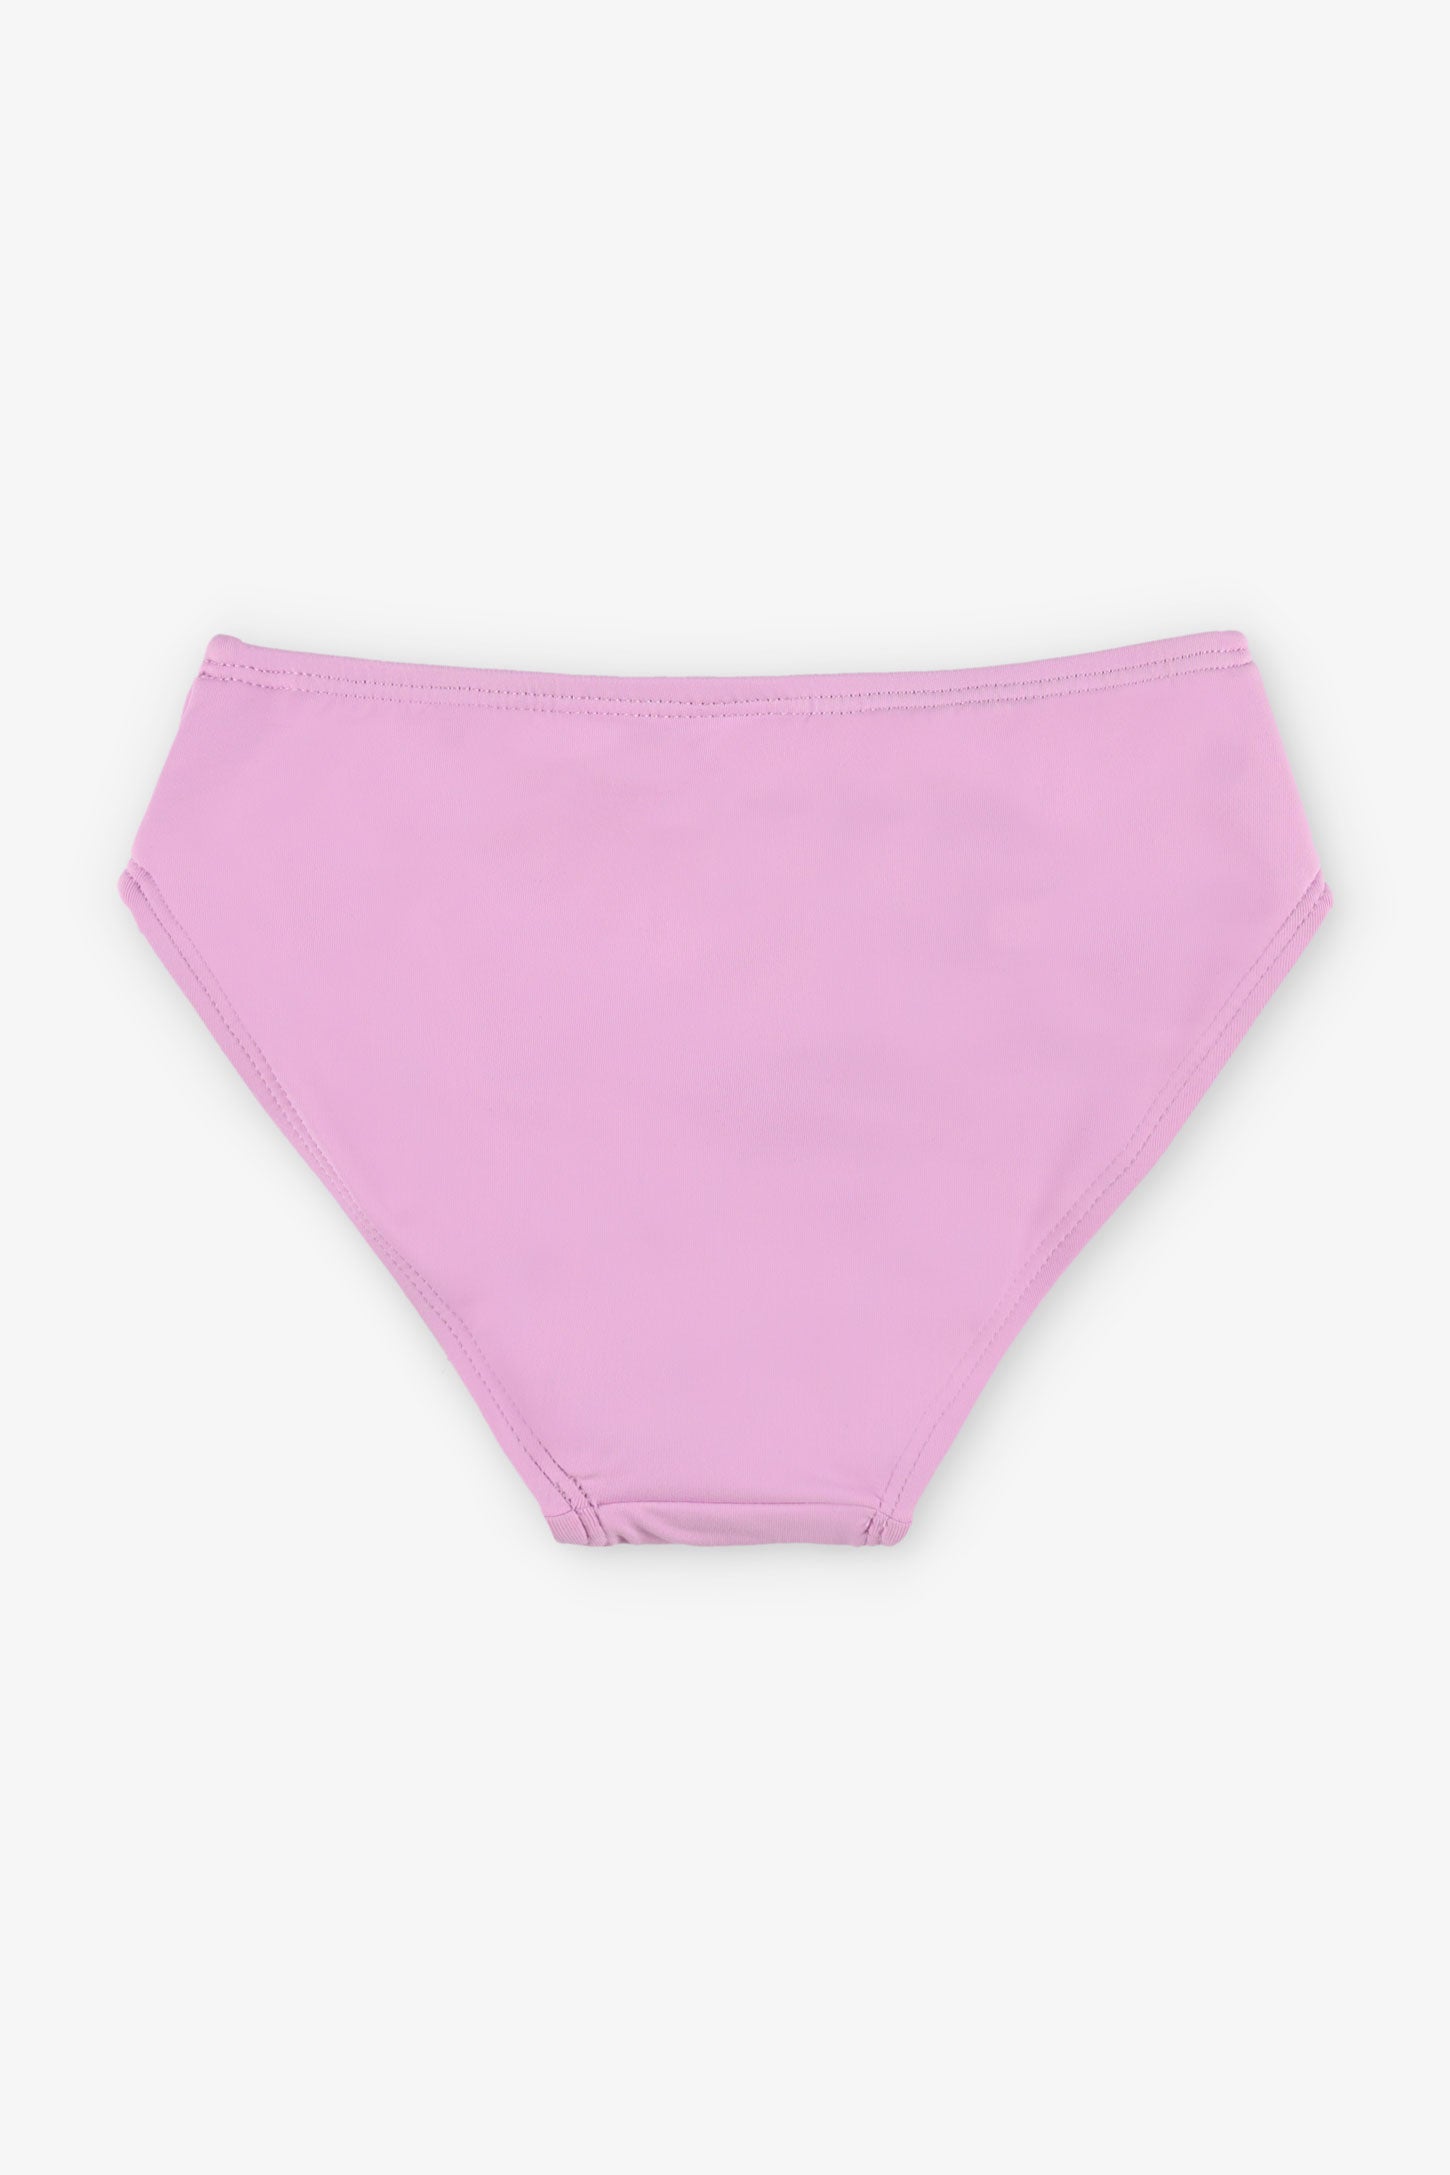 Culotte maillot de bain Bikini, 2/25$ - Enfant fille && MAUVE PALE